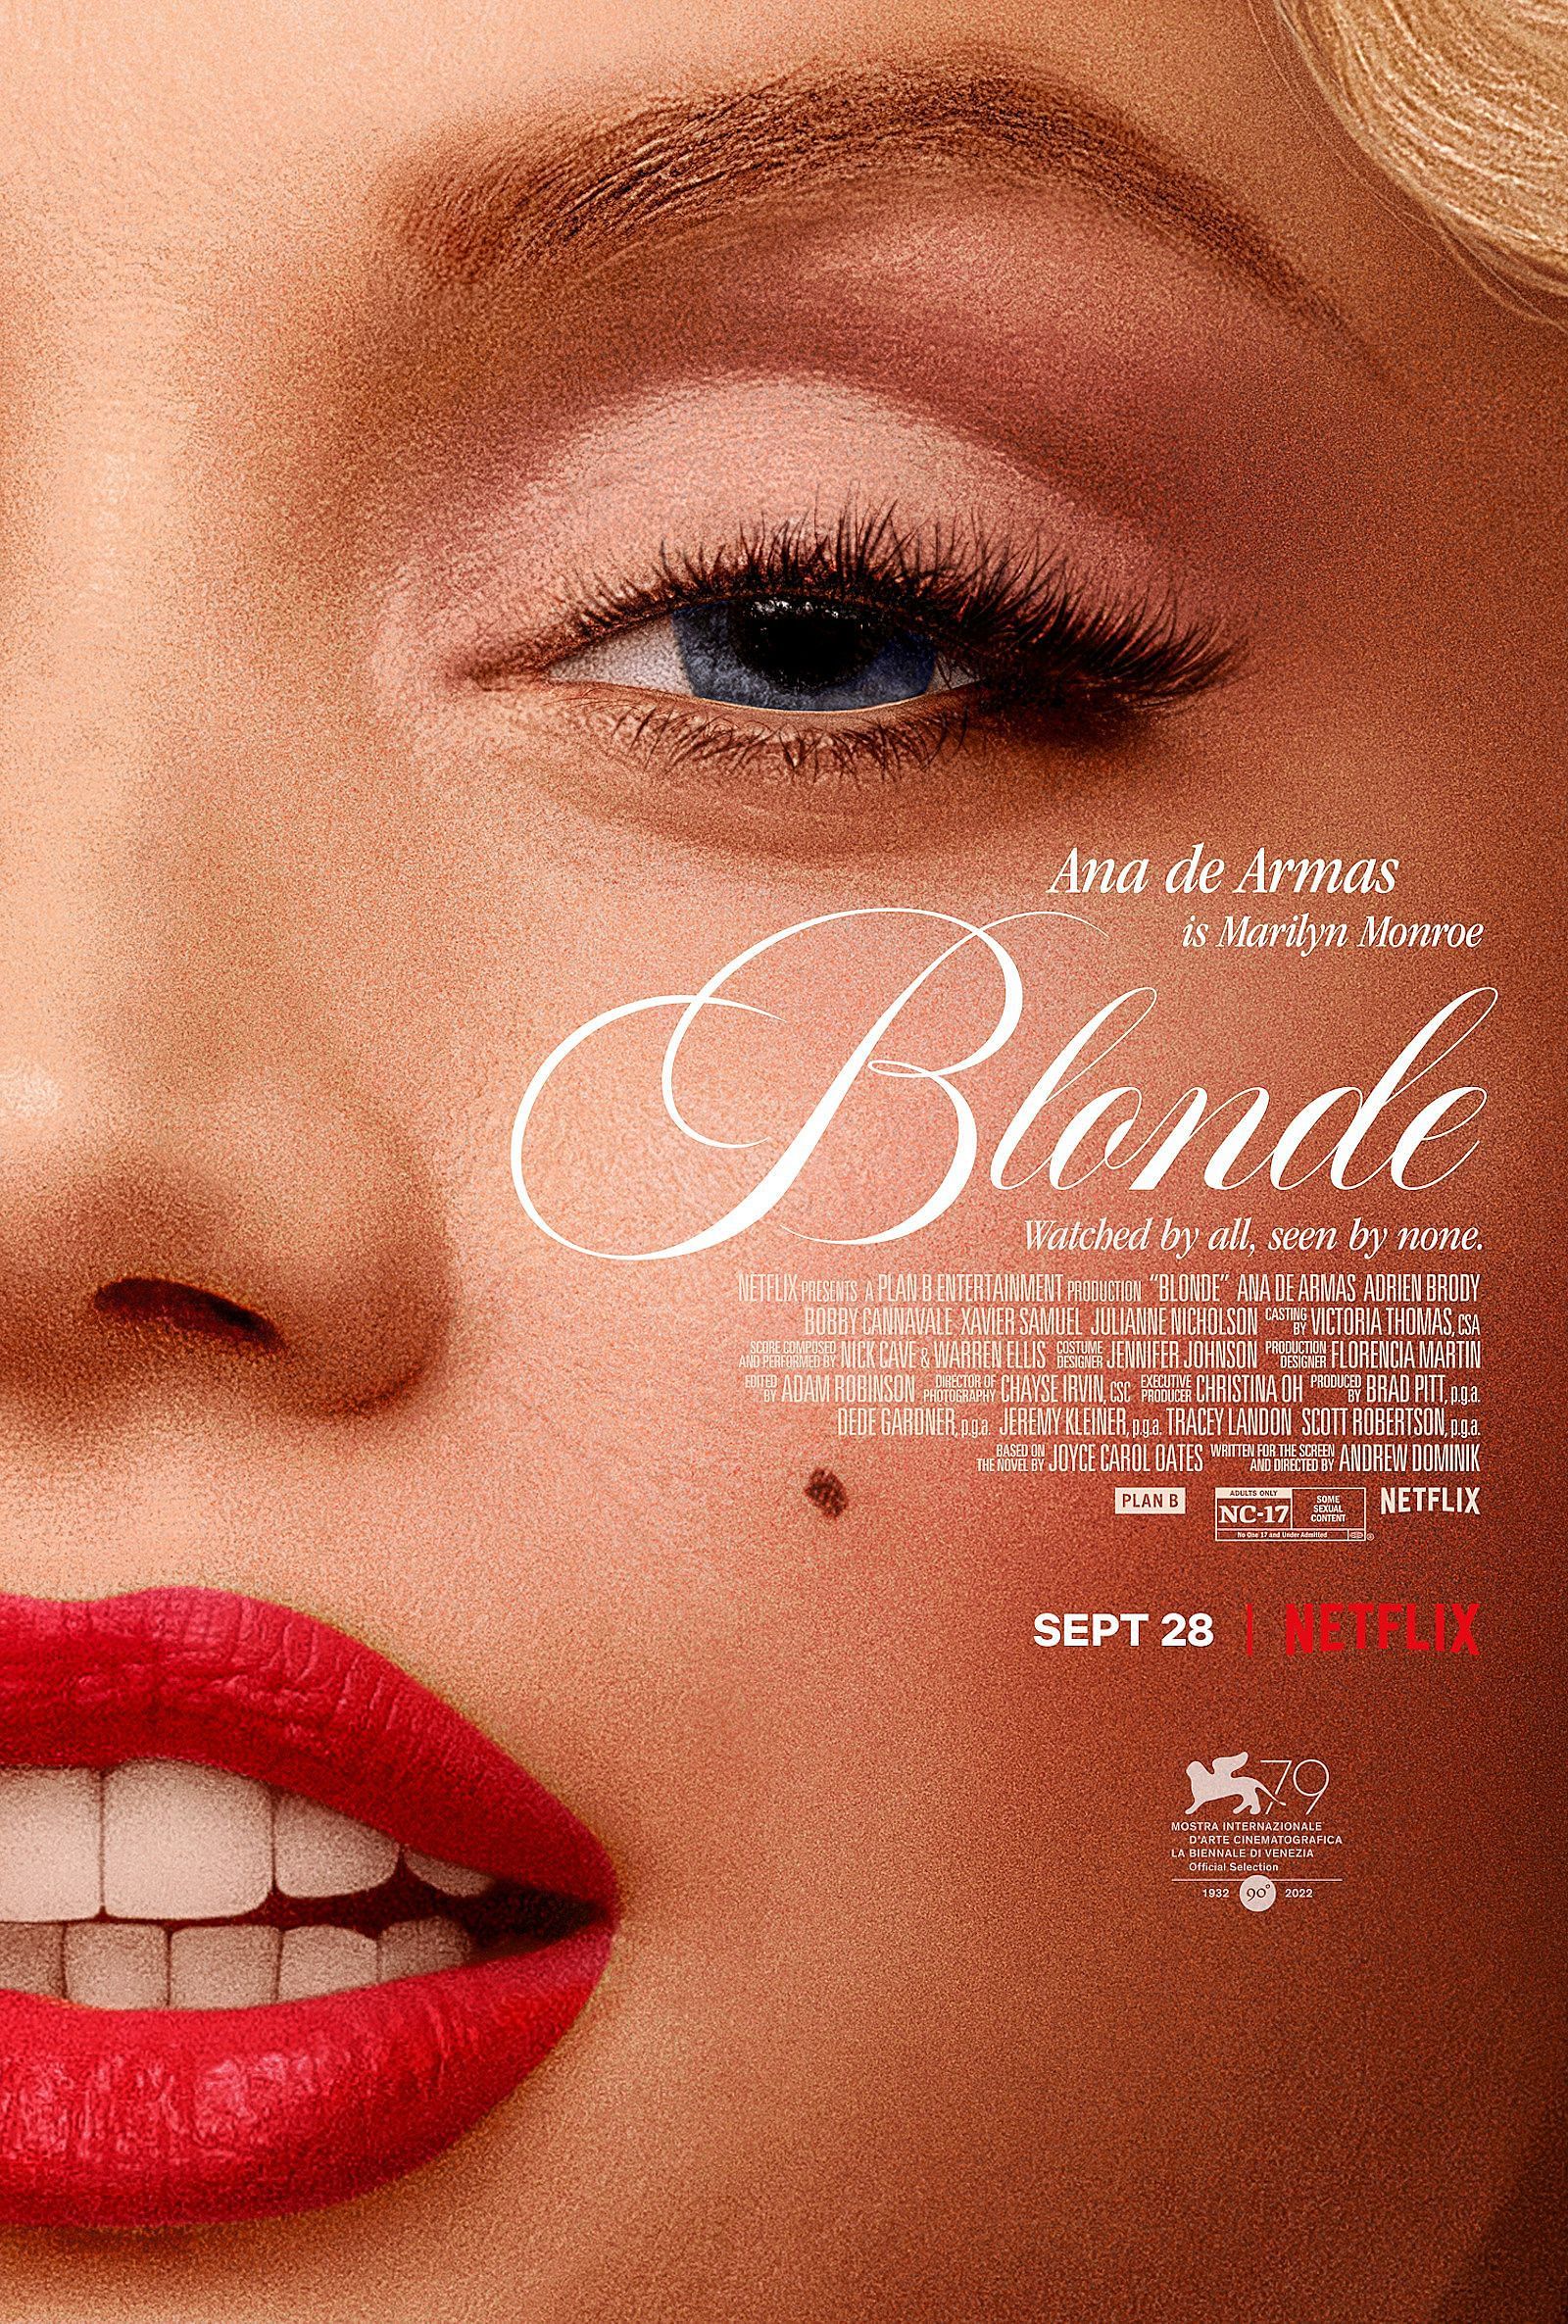 Blonde (Picture via Netflix)